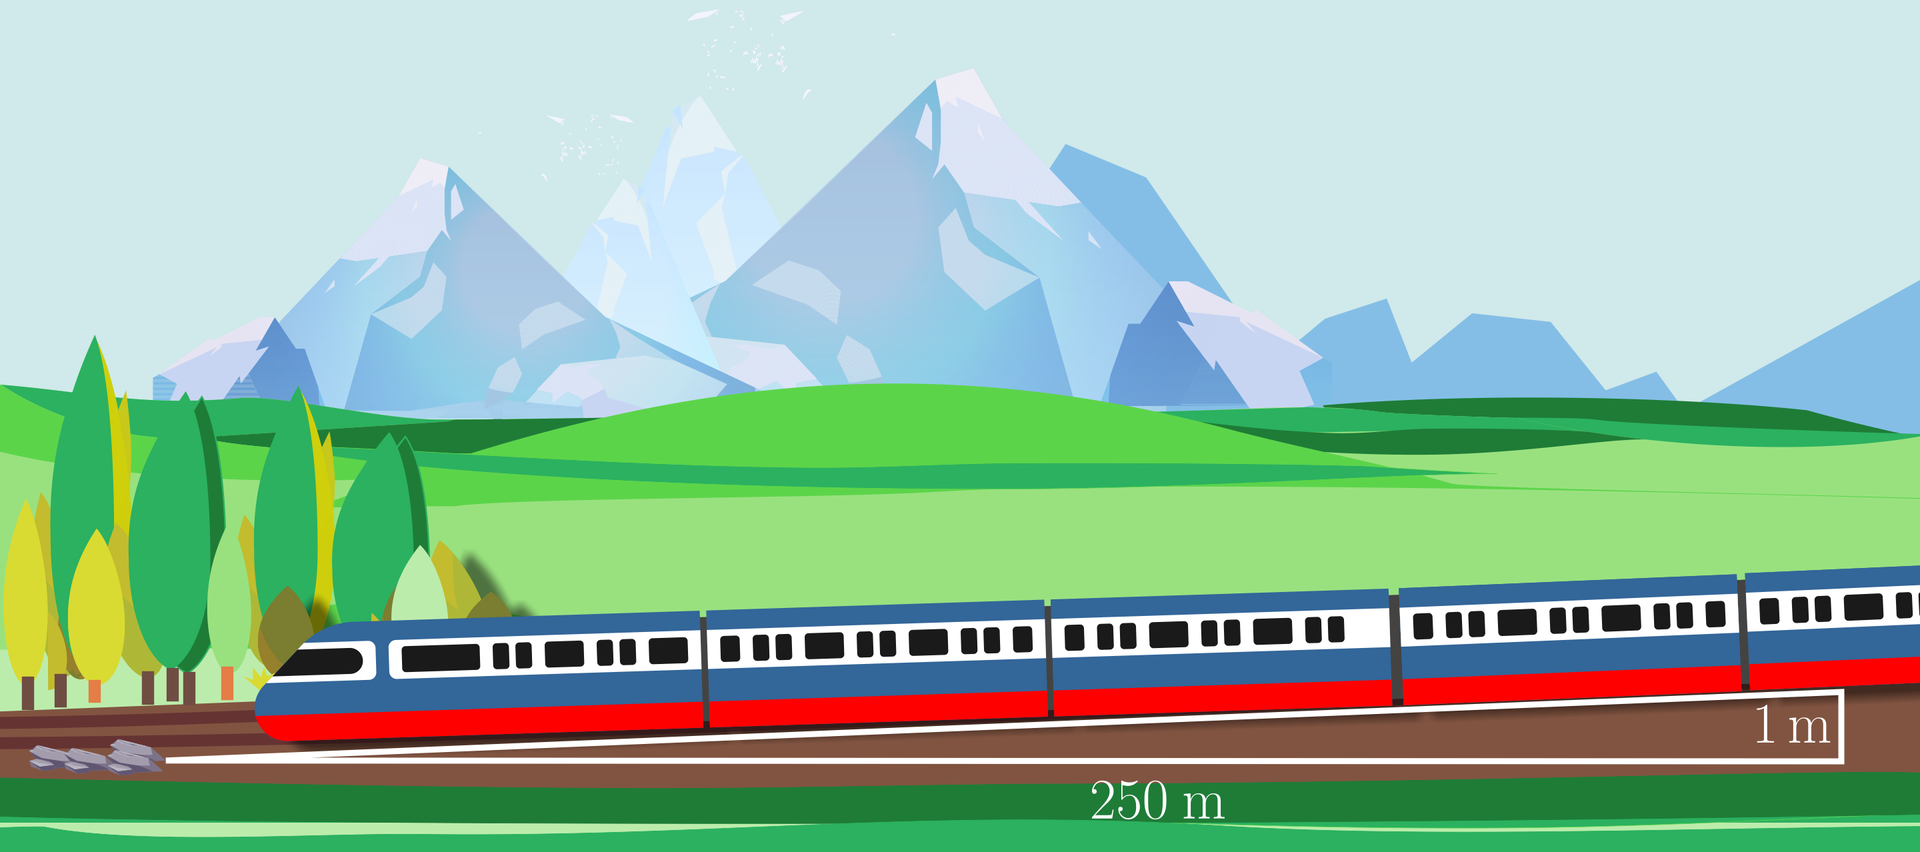 Grafika przedstawia krajobraz górski, przy czym na pierwszym planie są tory i pociąg. W grafikę wkomponowany jest trójkąt prostokątny w taki sposób, że jego przeciwprostokątna pokrywa się z podwoziem pociągu. Jego podstawa jest opisana jako 250 metrów, jego krótka przyprostokątna opisana jest jako 1 metr, a przeciwprostokątna nie jest opisana. 